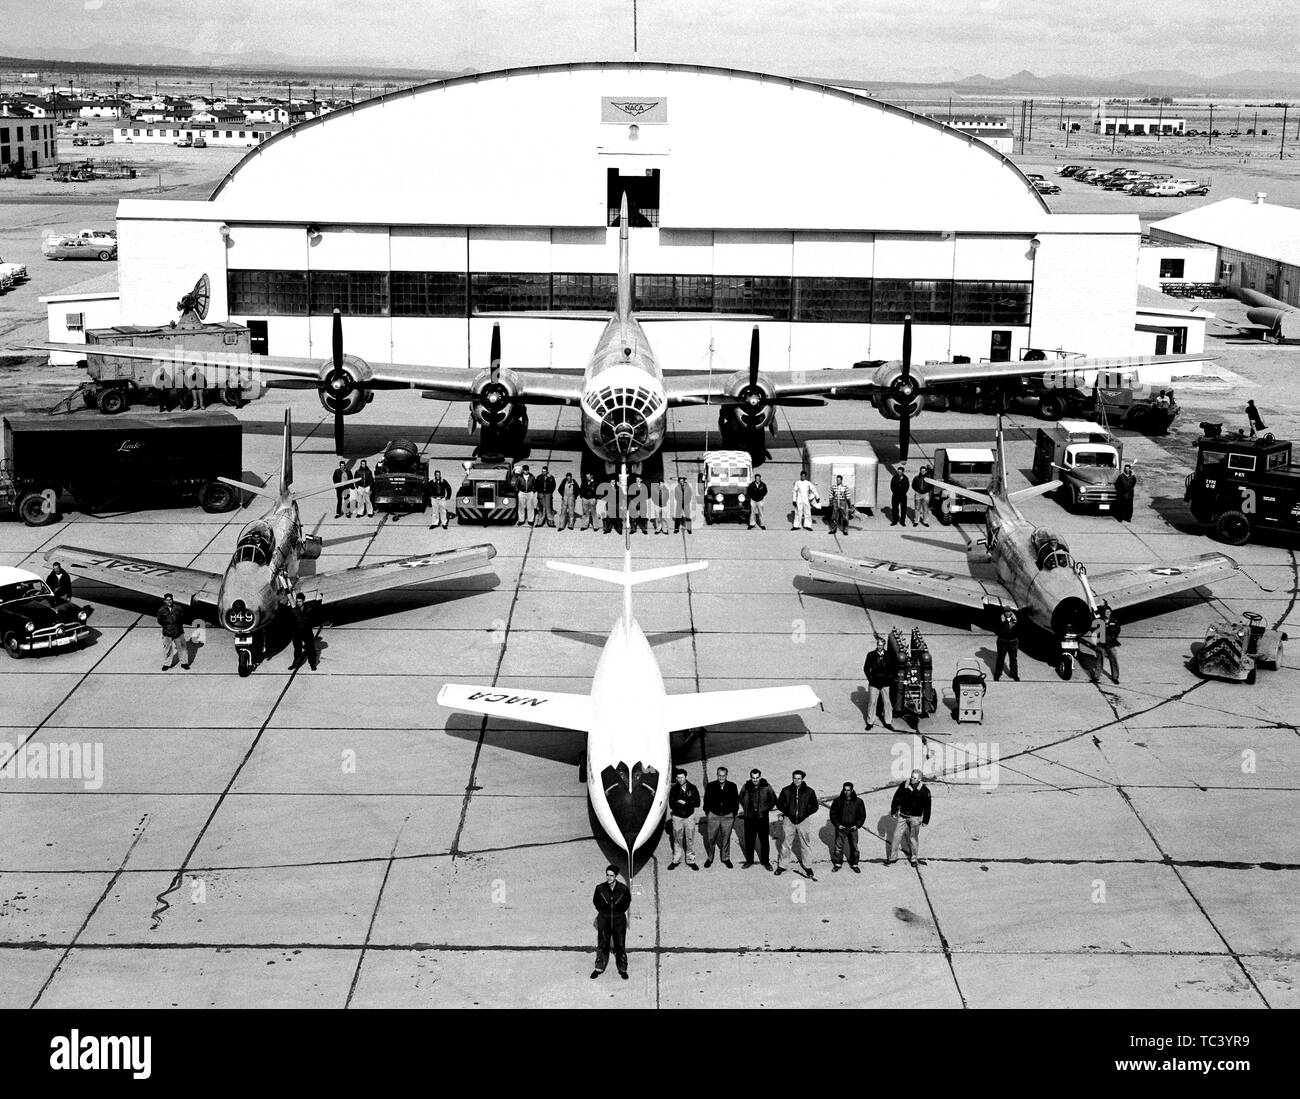 Vue aérienne de la flotte des avions d'essai de la NACA en face de l'hangar de la station de vol à grande vitesse, Edwards, Californie, 1952. Droit avec la permission de la National Aeronautics and Space Administration (NASA). () Banque D'Images